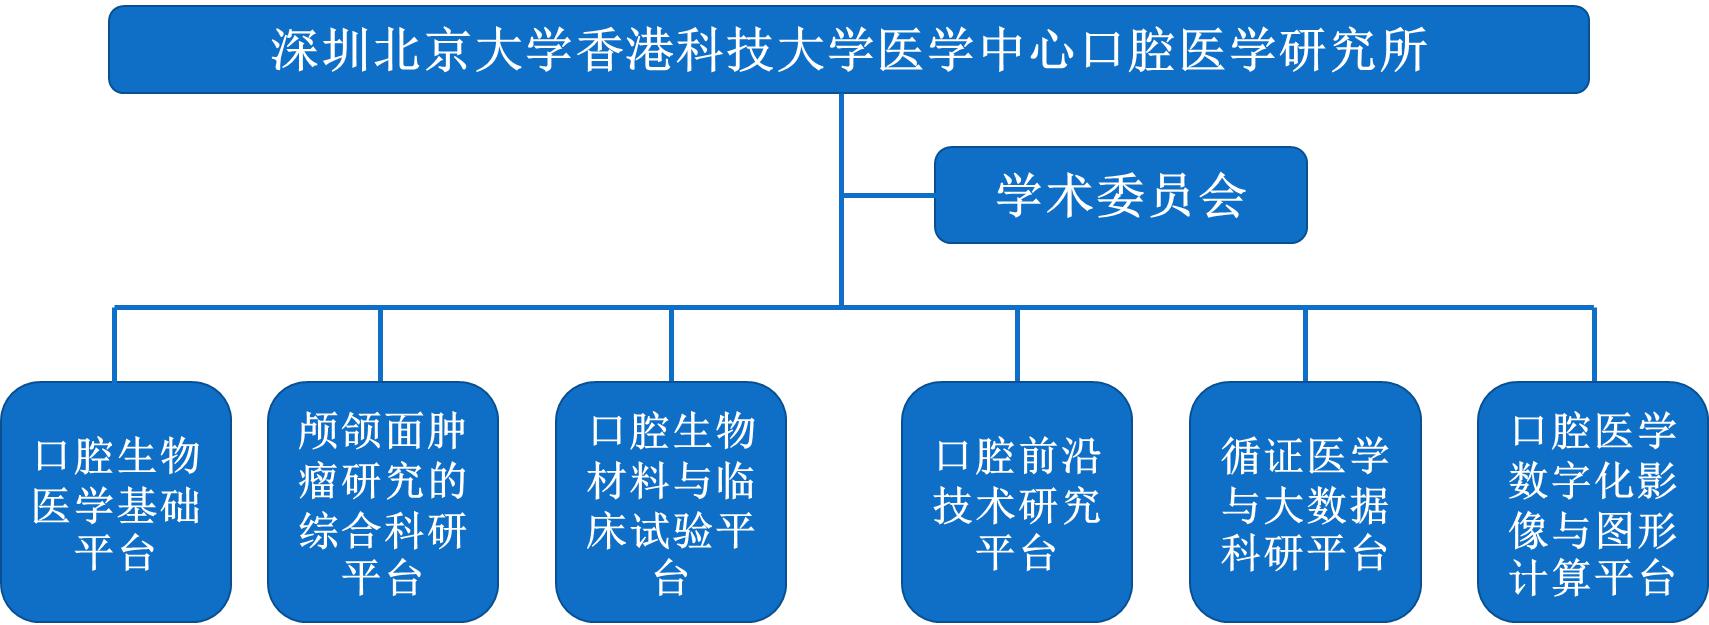 口腔医学研究所简介(图3)